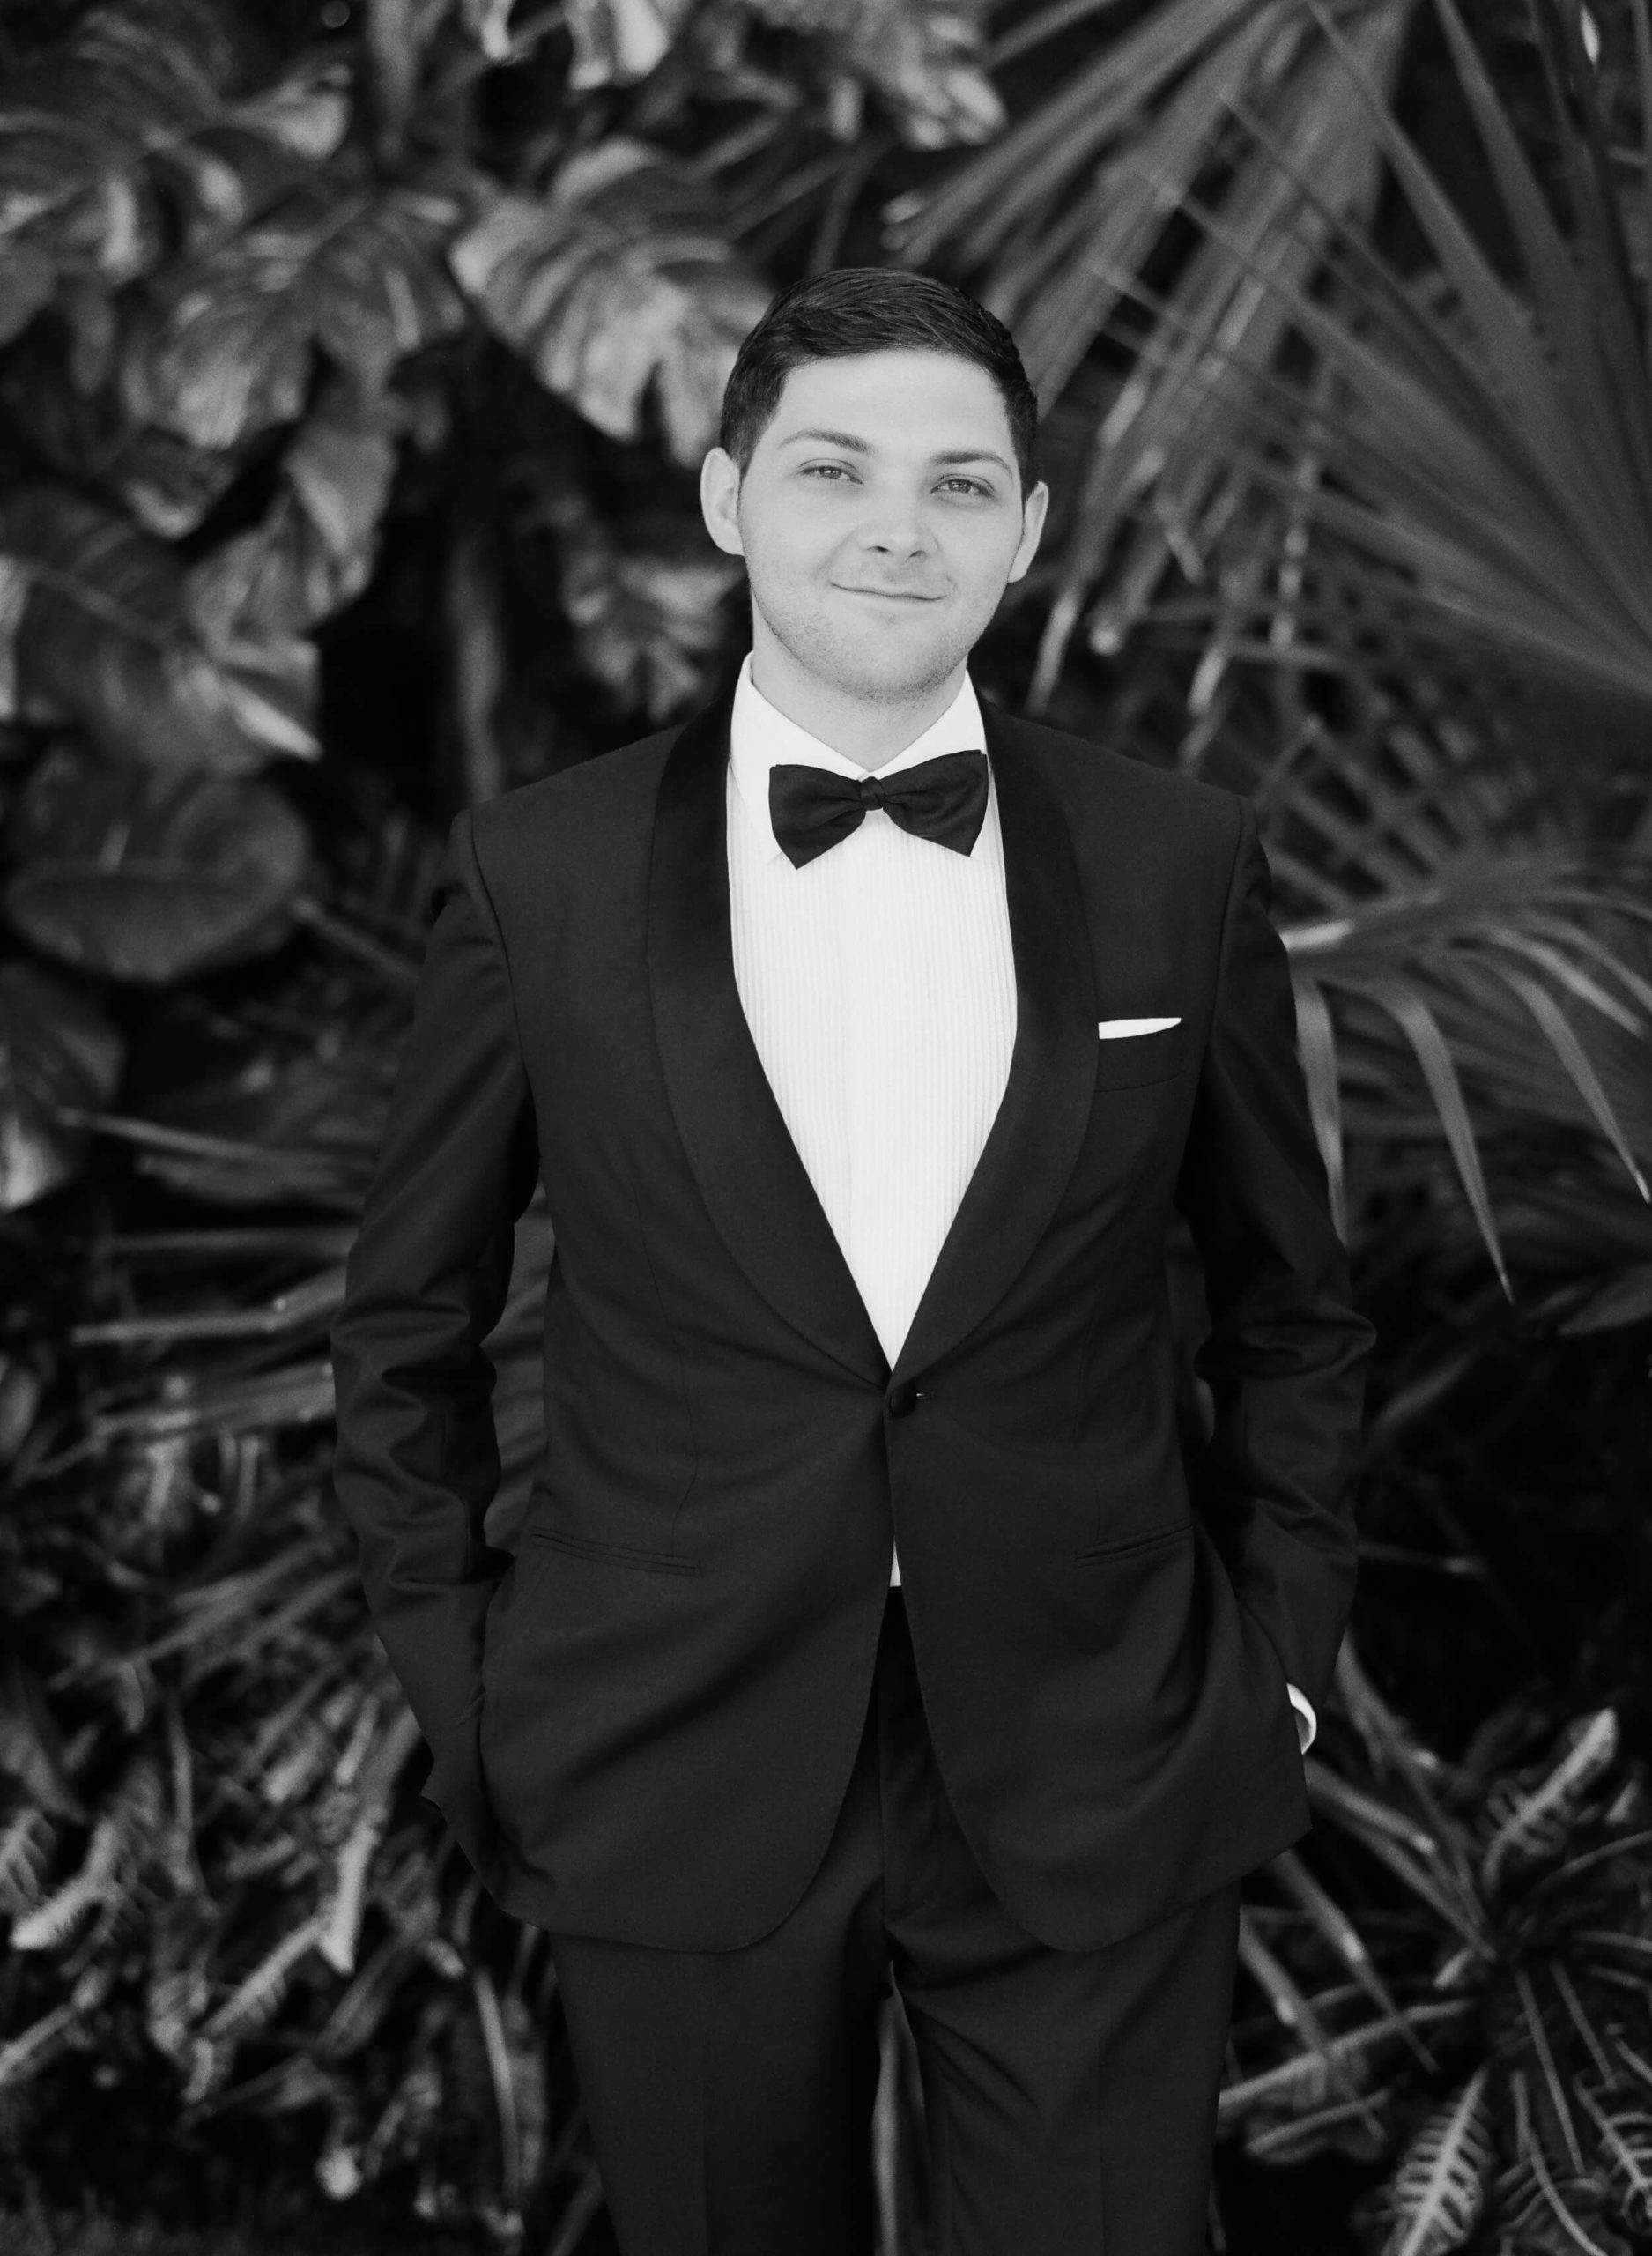 Lucas smiling in his tuxedo